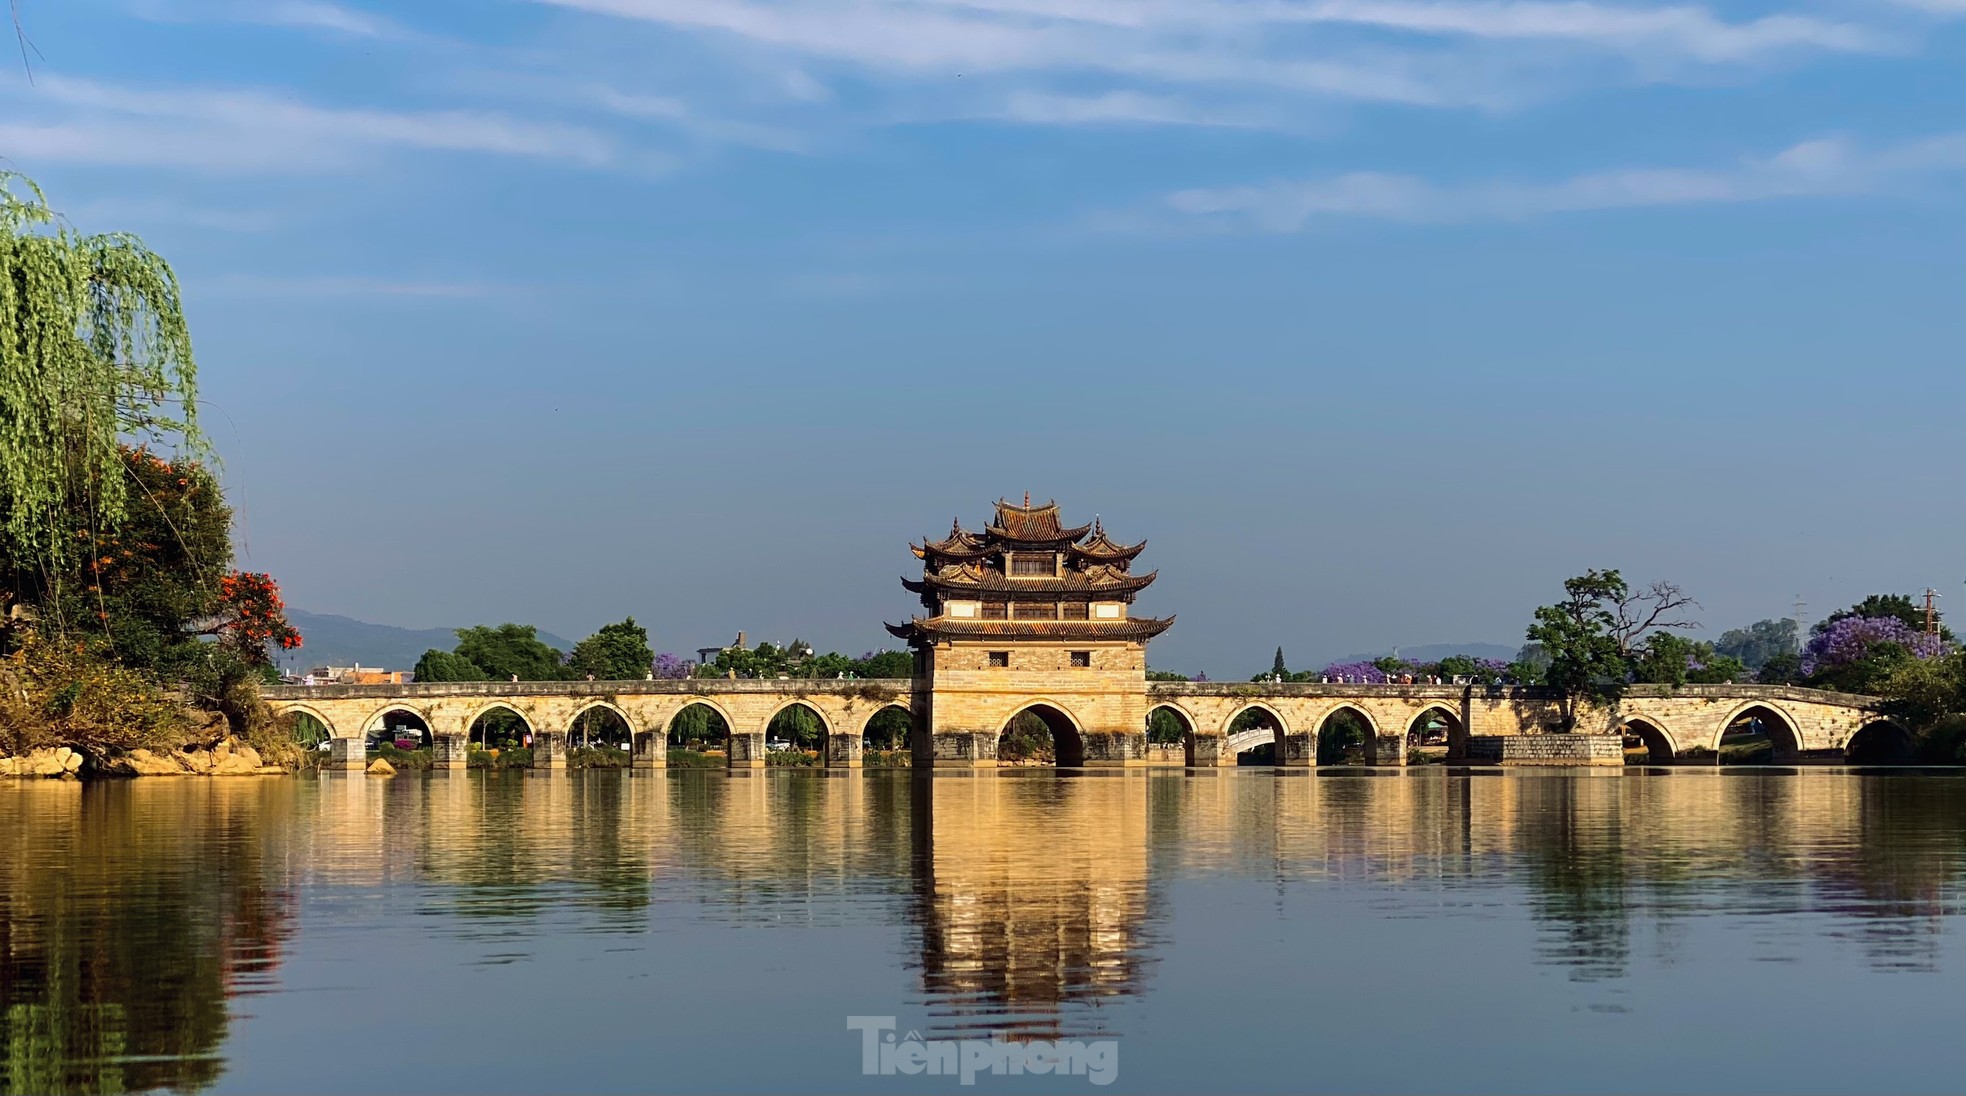 Chiêm ngưỡng vẻ đẹp kiến trúc của thành cổ Trung Quốc ảnh 16